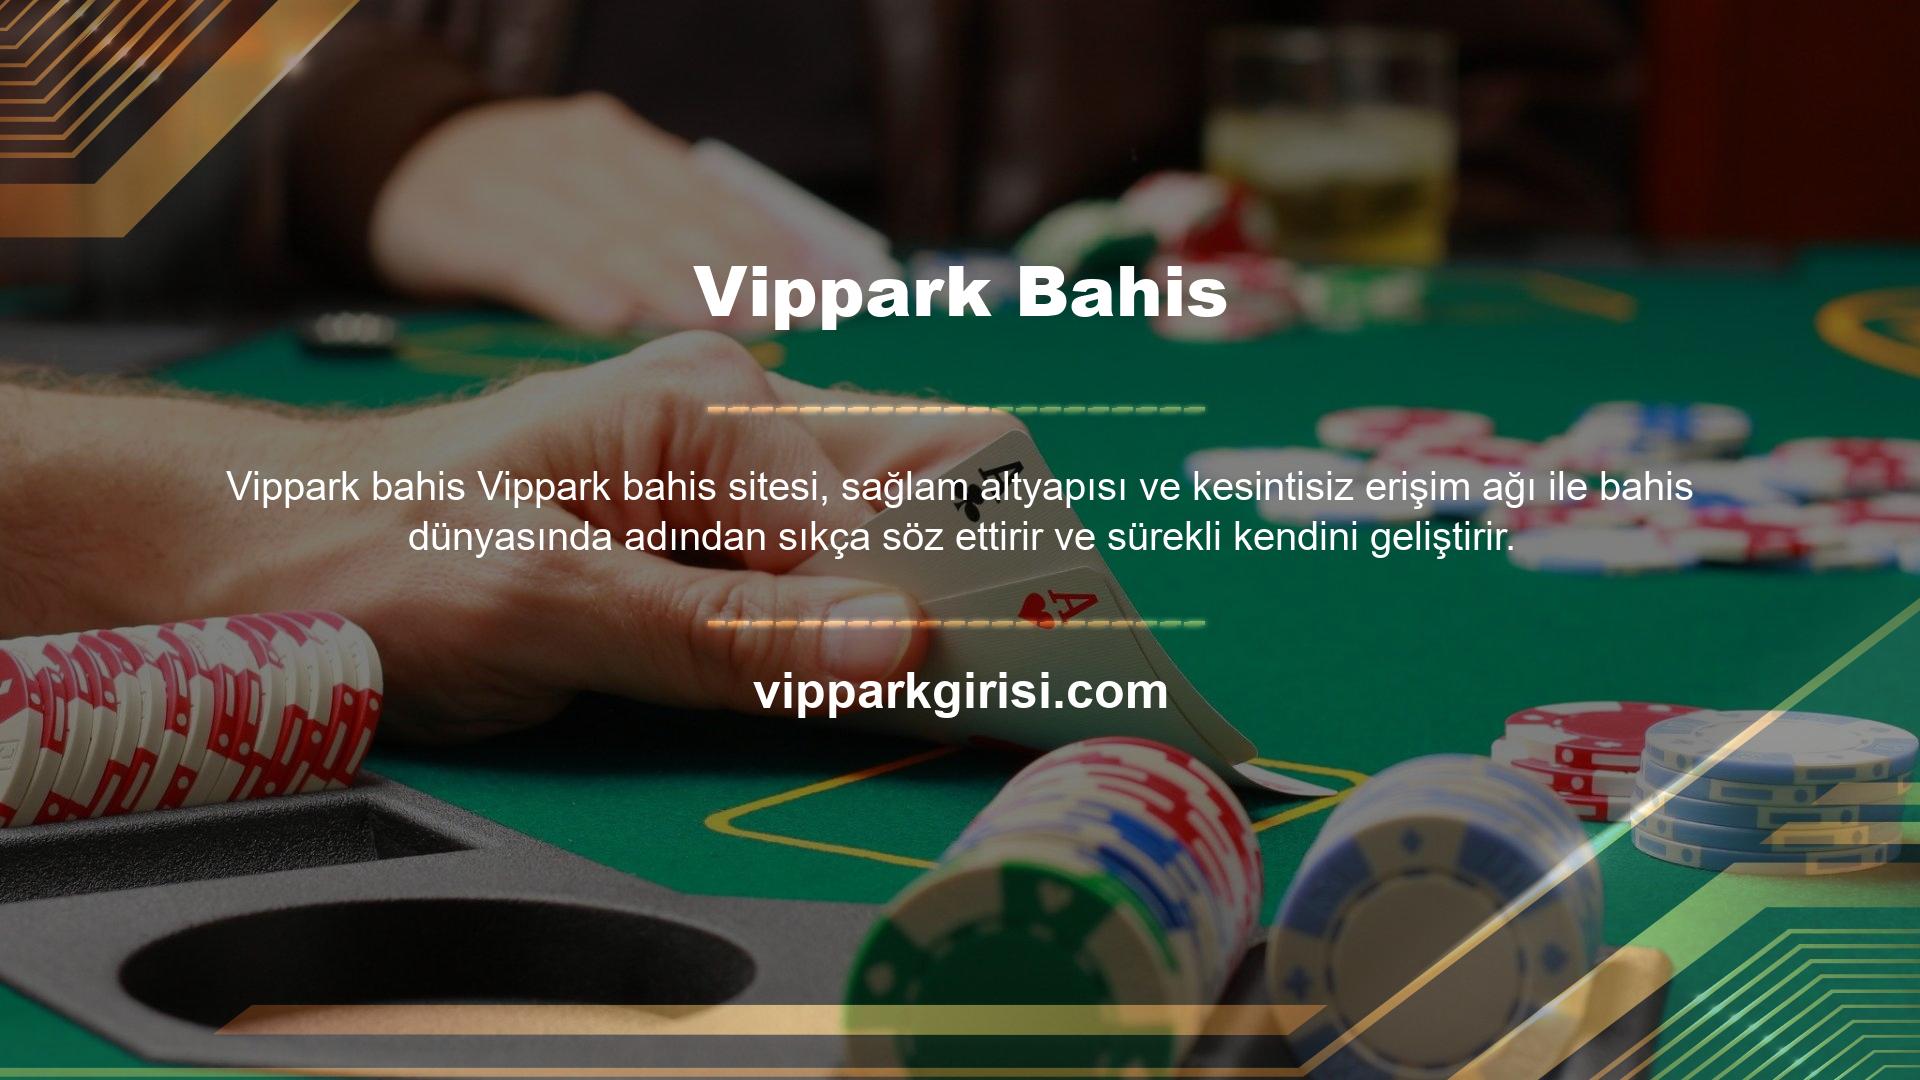 Vippark, zengin bonus içeriklerinin yanı sıra üye kullanıcılarına sunduğu alternatif erişim imkanlarıyla da dikkat çeken canlı bahis sitelerini ayağına getirmeye devam ediyor